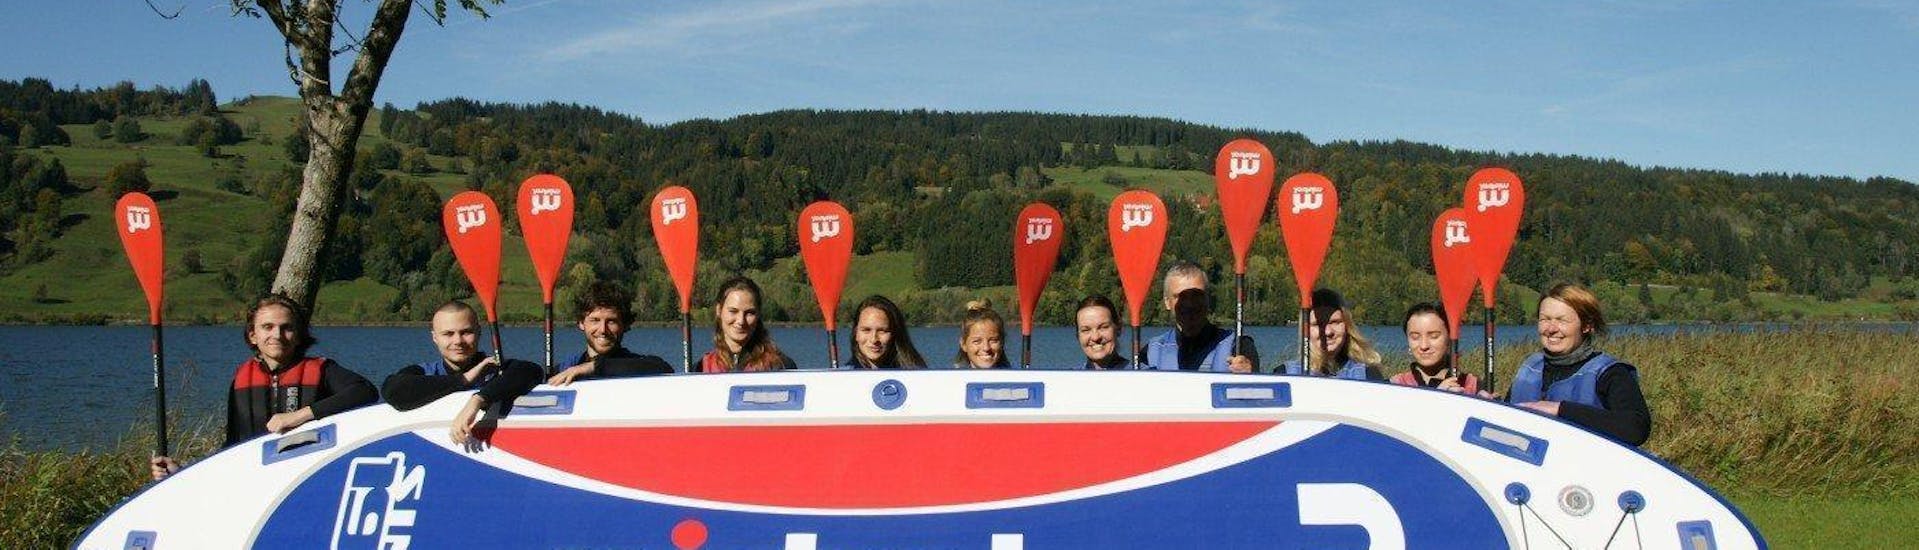 Een groep vrienden staat achter het grote SUP-bord dat werd gebruikt op de grote stand-up paddeltour in Allgäu met Spirits of Nature Allgäu.